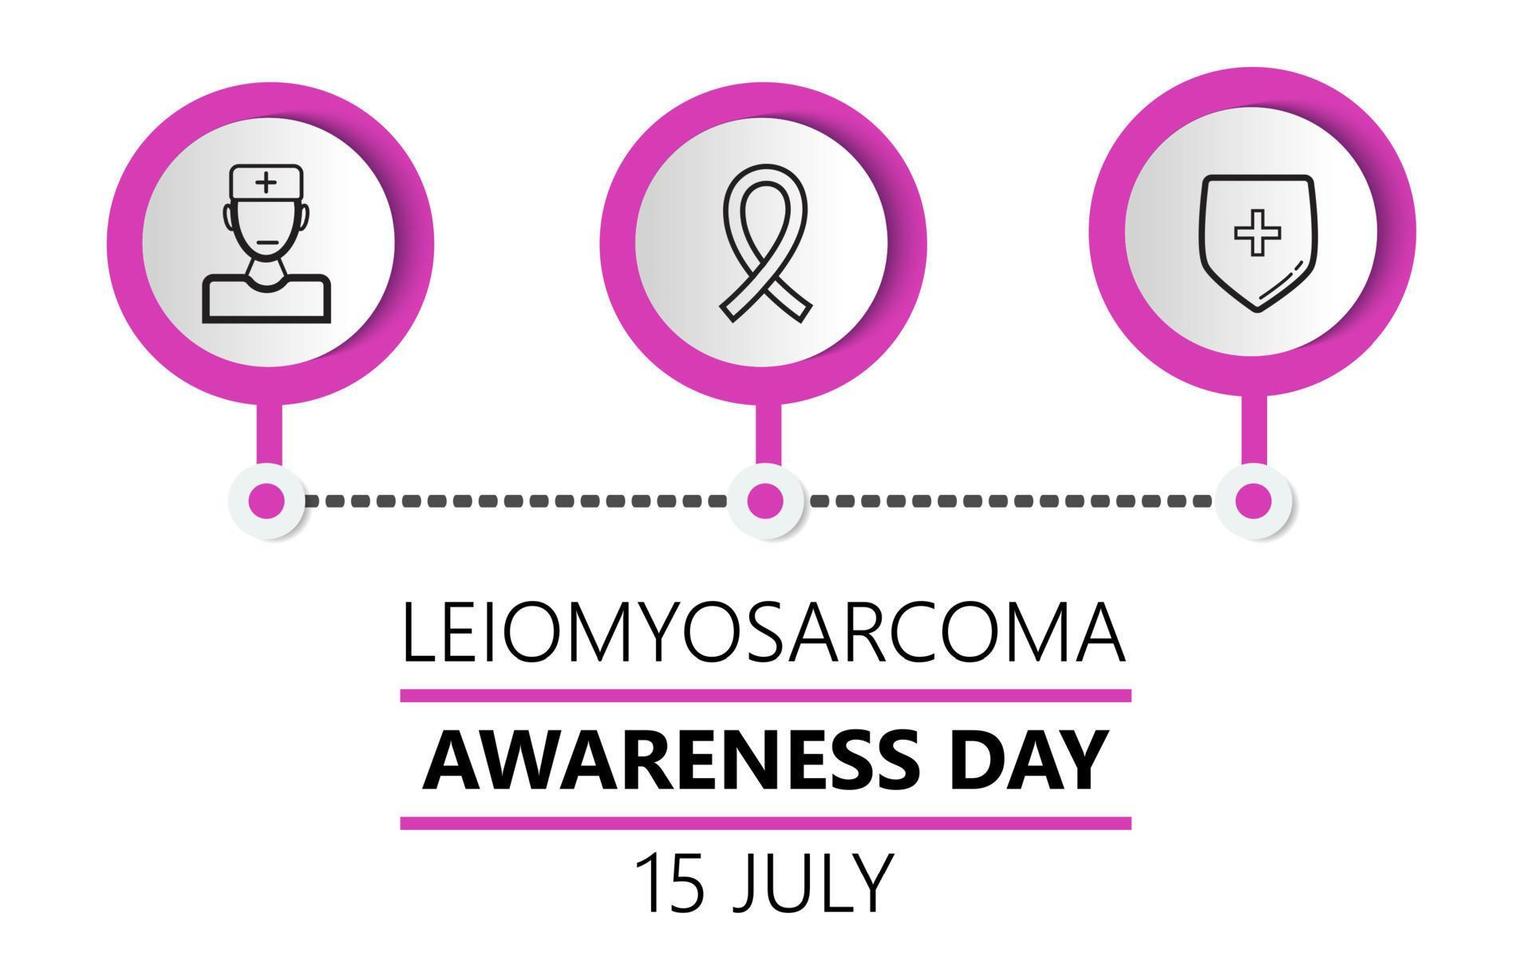 vettore di concetto della giornata di sensibilizzazione sul leiomiosarcoma. l'assistenza sanitaria e l'evento medico celebrano il 15 luglio. sarcoma, illustrazioni infografiche per cancro dieresi.